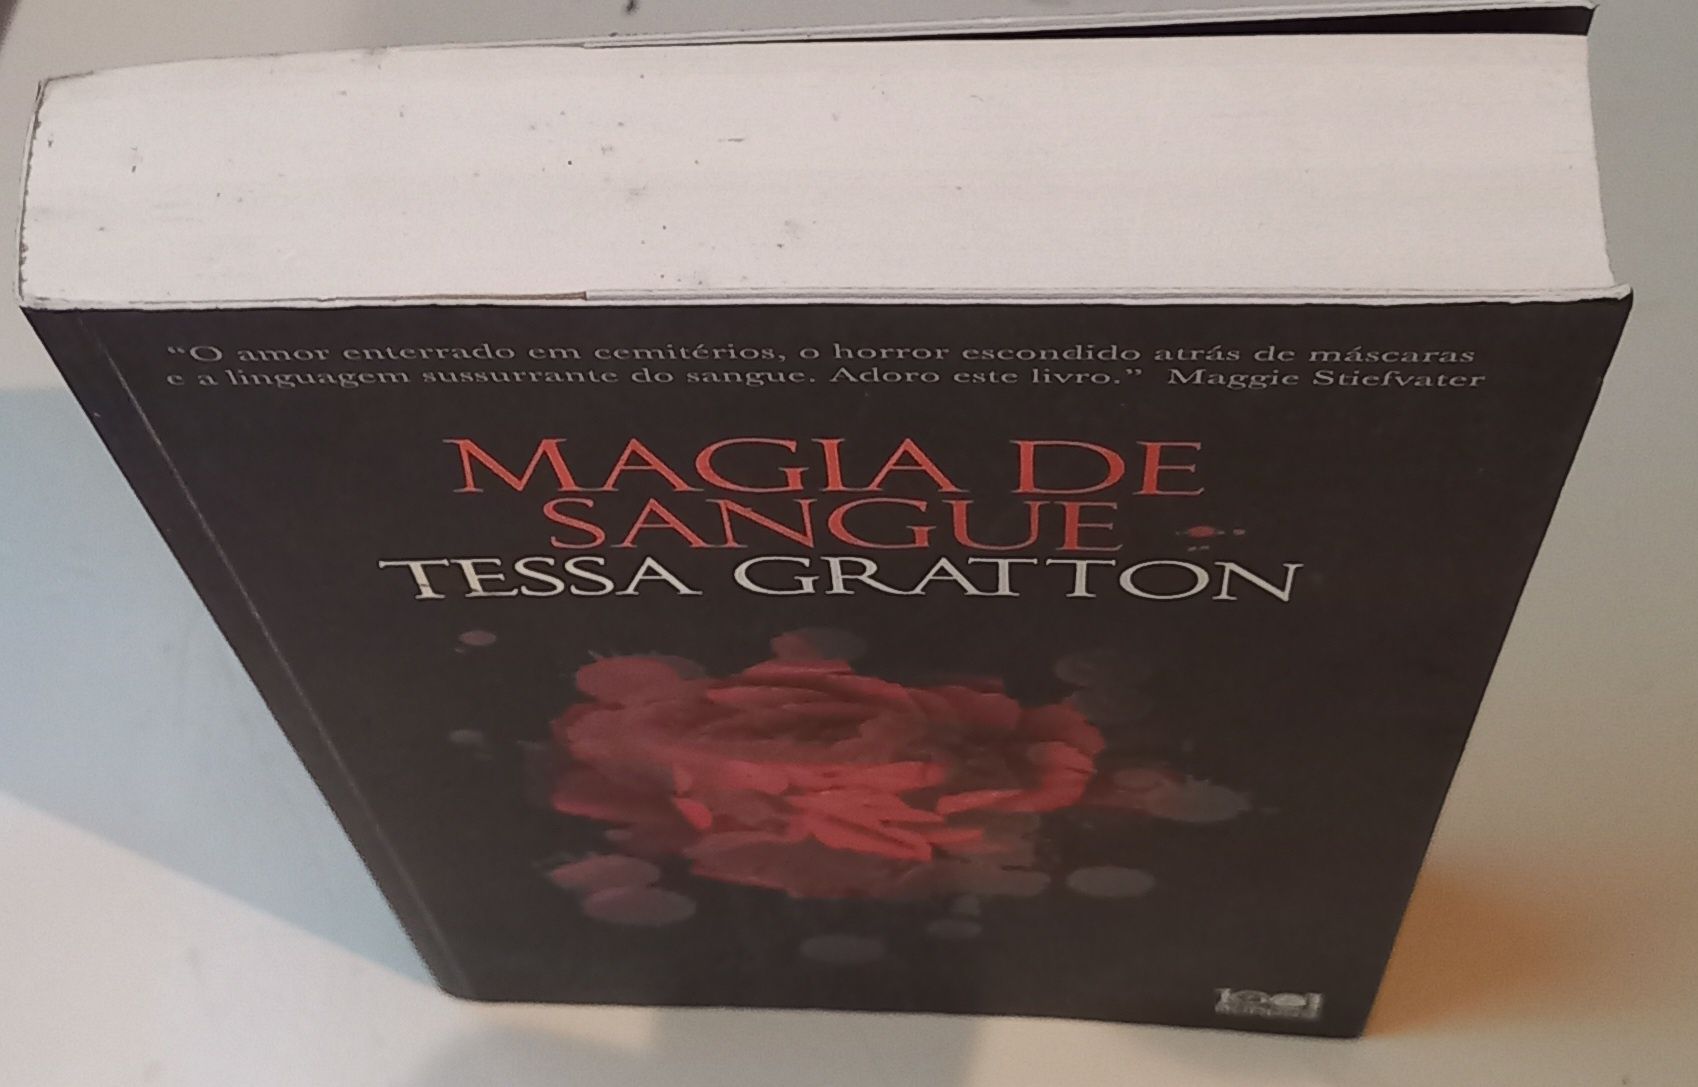 Livro "Magia de Sangue" Tessa Gratton. PORTES GRÁTIS.